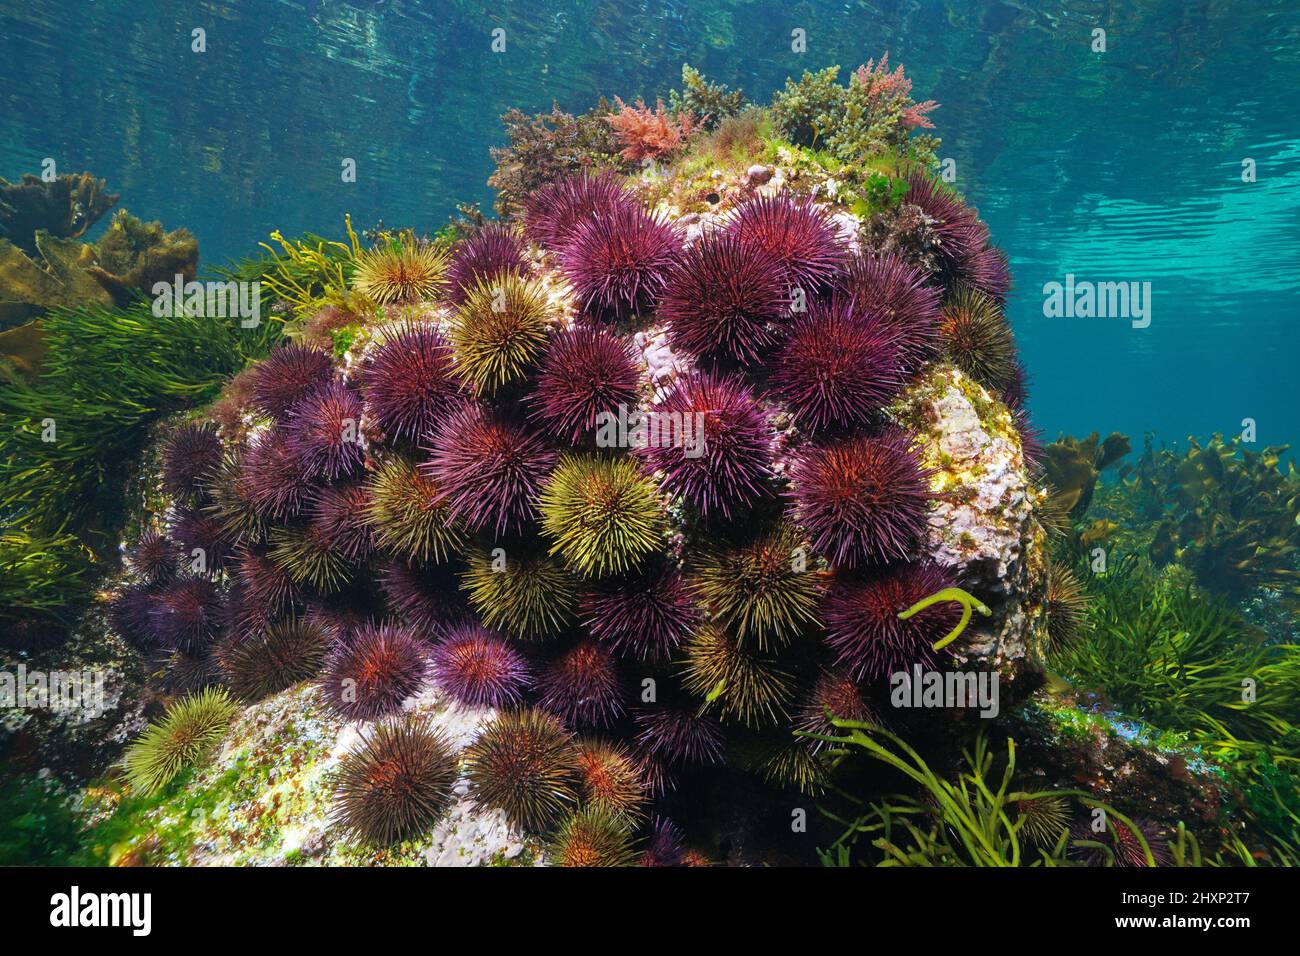 Seeigel-Gruppe unter Wasser (Purpurseeigel Paracentrotus lividus), östlicher Atlantischer Ozean, Spanien, Galizien Stockfoto